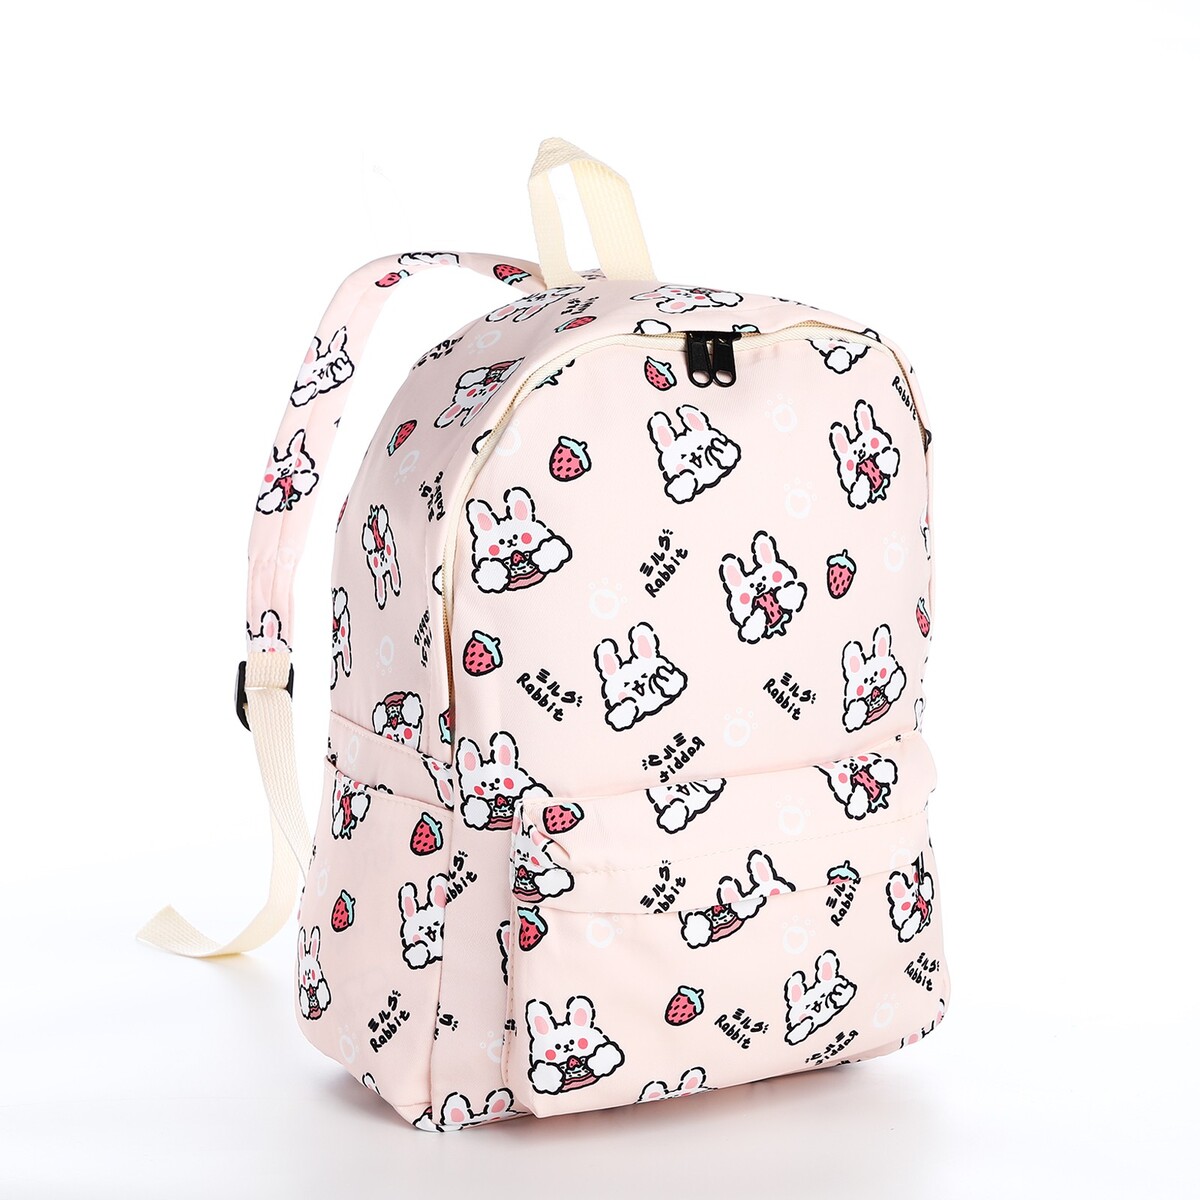 Рюкзак школьный из текстиля на молнии, 3 кармана, цвет бежевый/розовый рюкзак на молнии наружный карман 2 боковых кармана бежевый